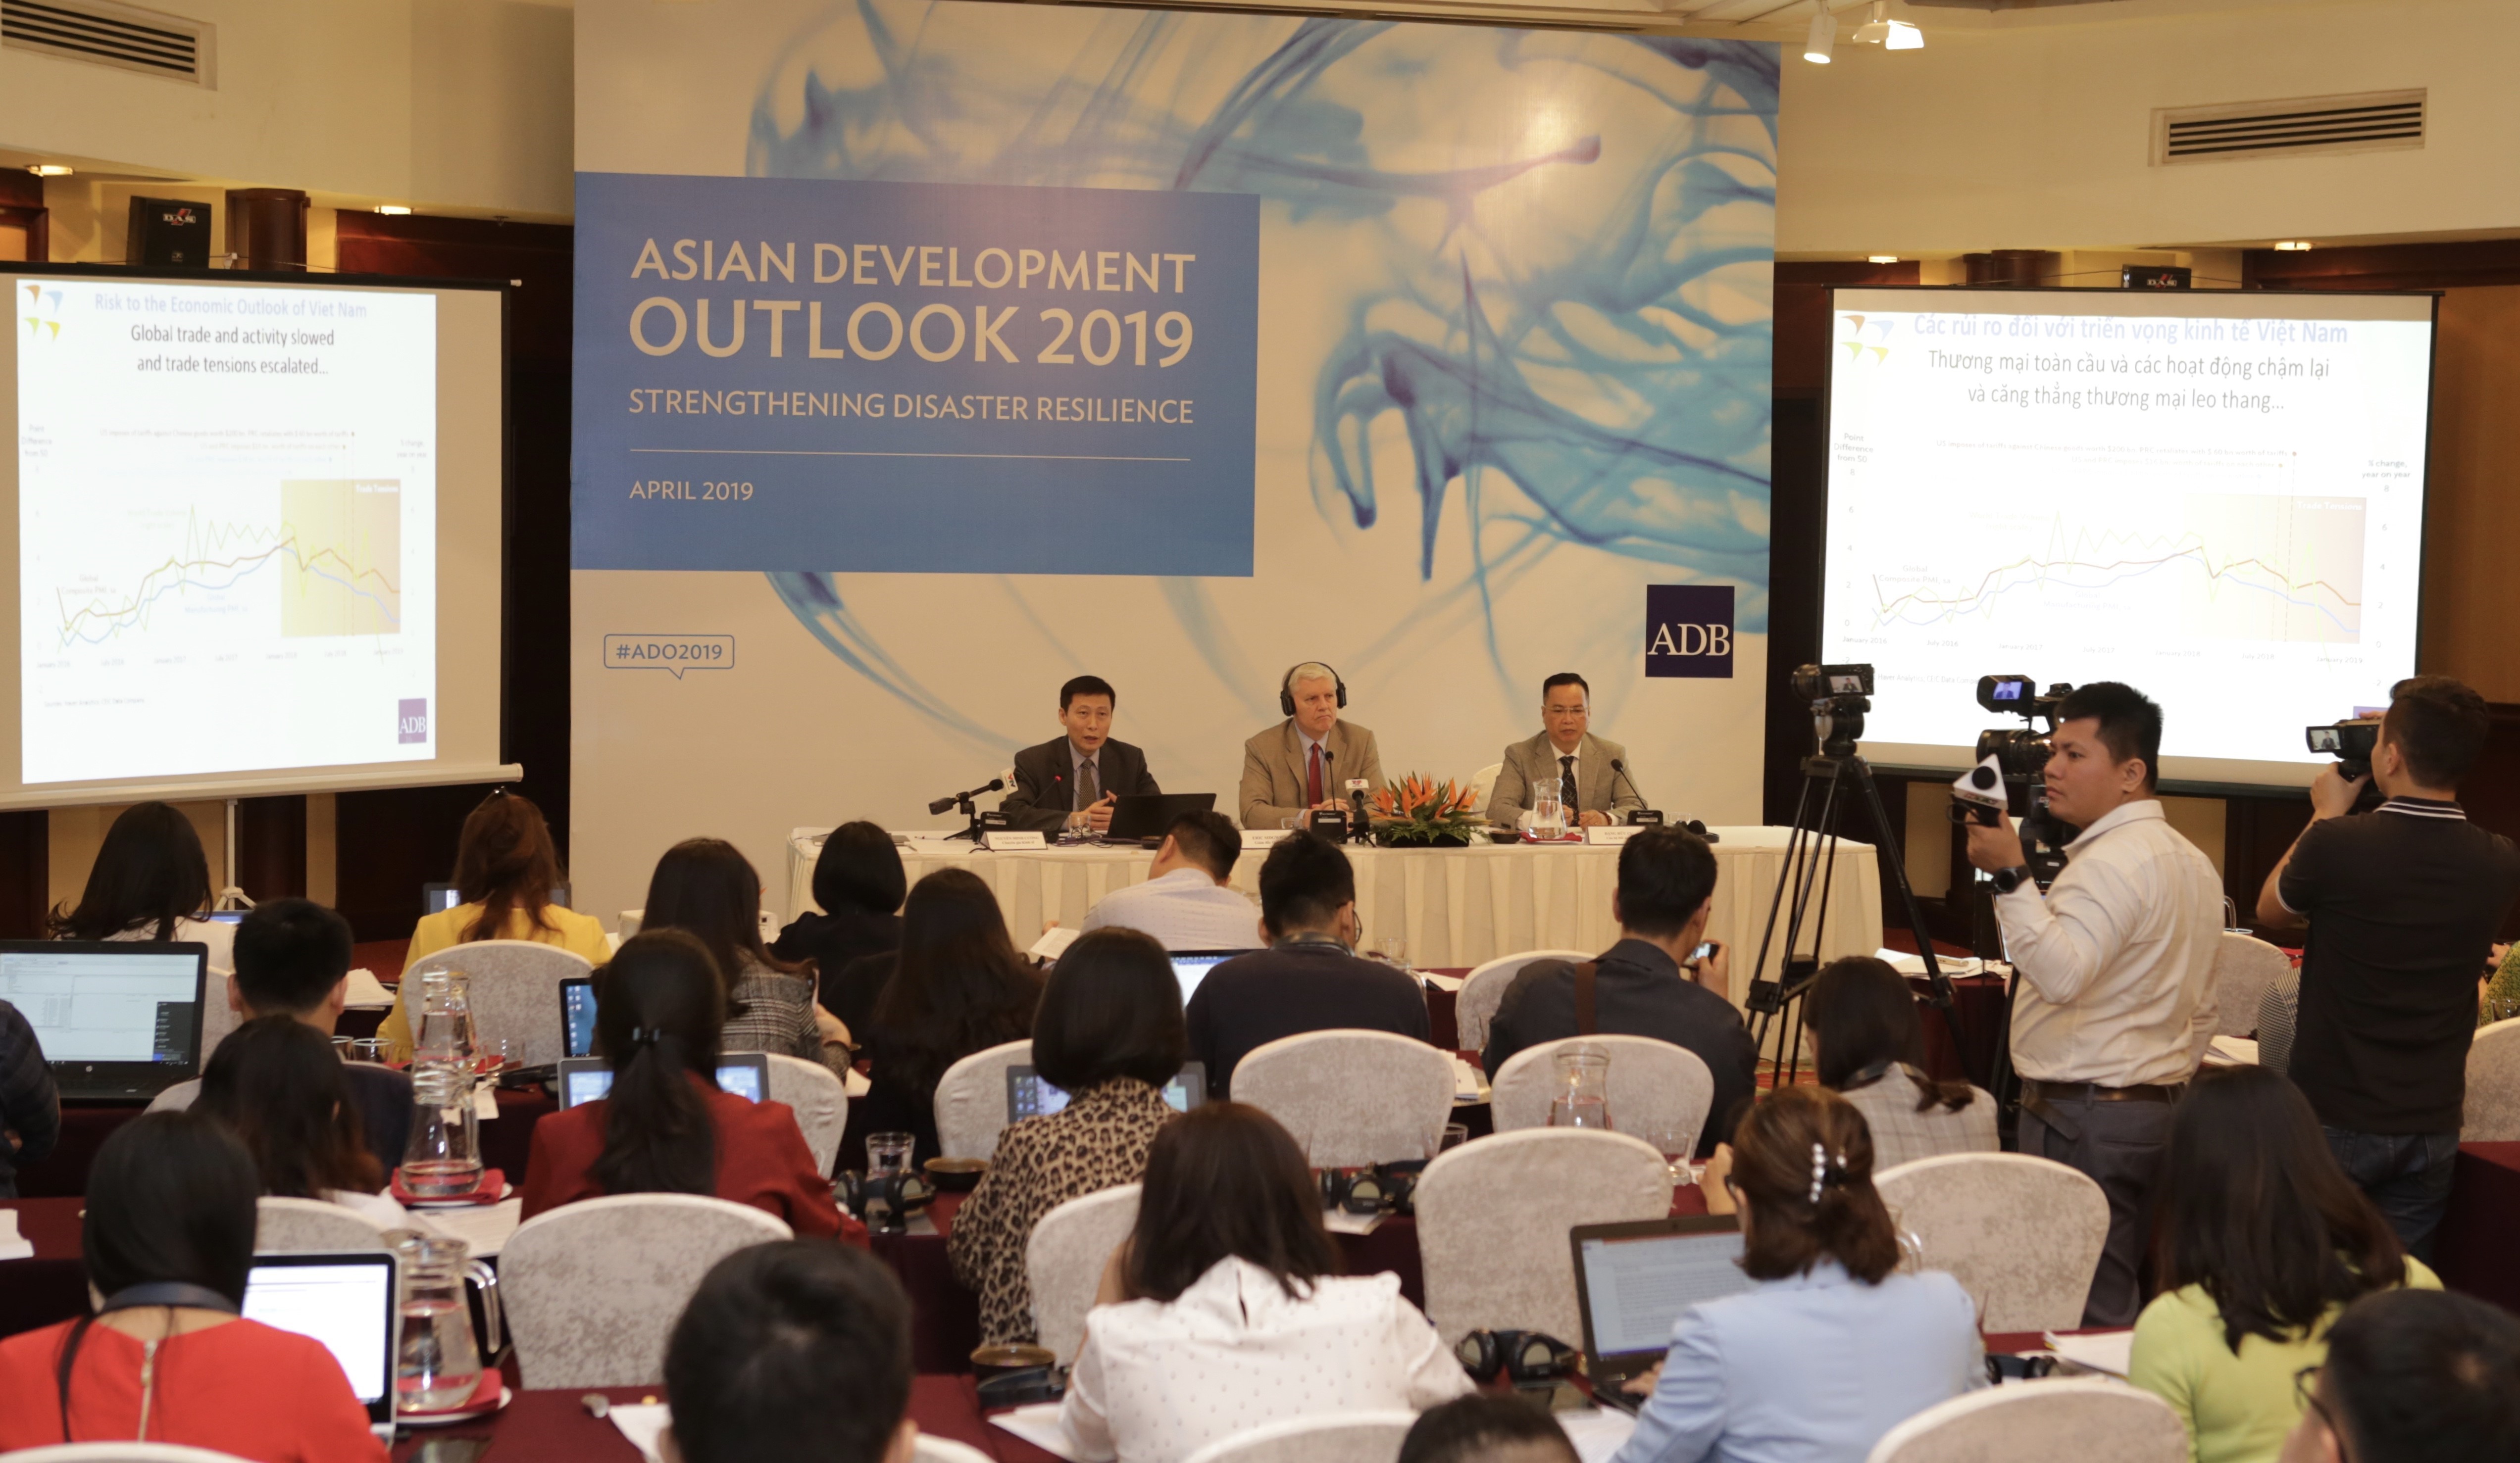 La conférence de presse consacrée à la publication du rapport Asian development outlook 2019 de la Banque asiatique de développement. Photo: VNA